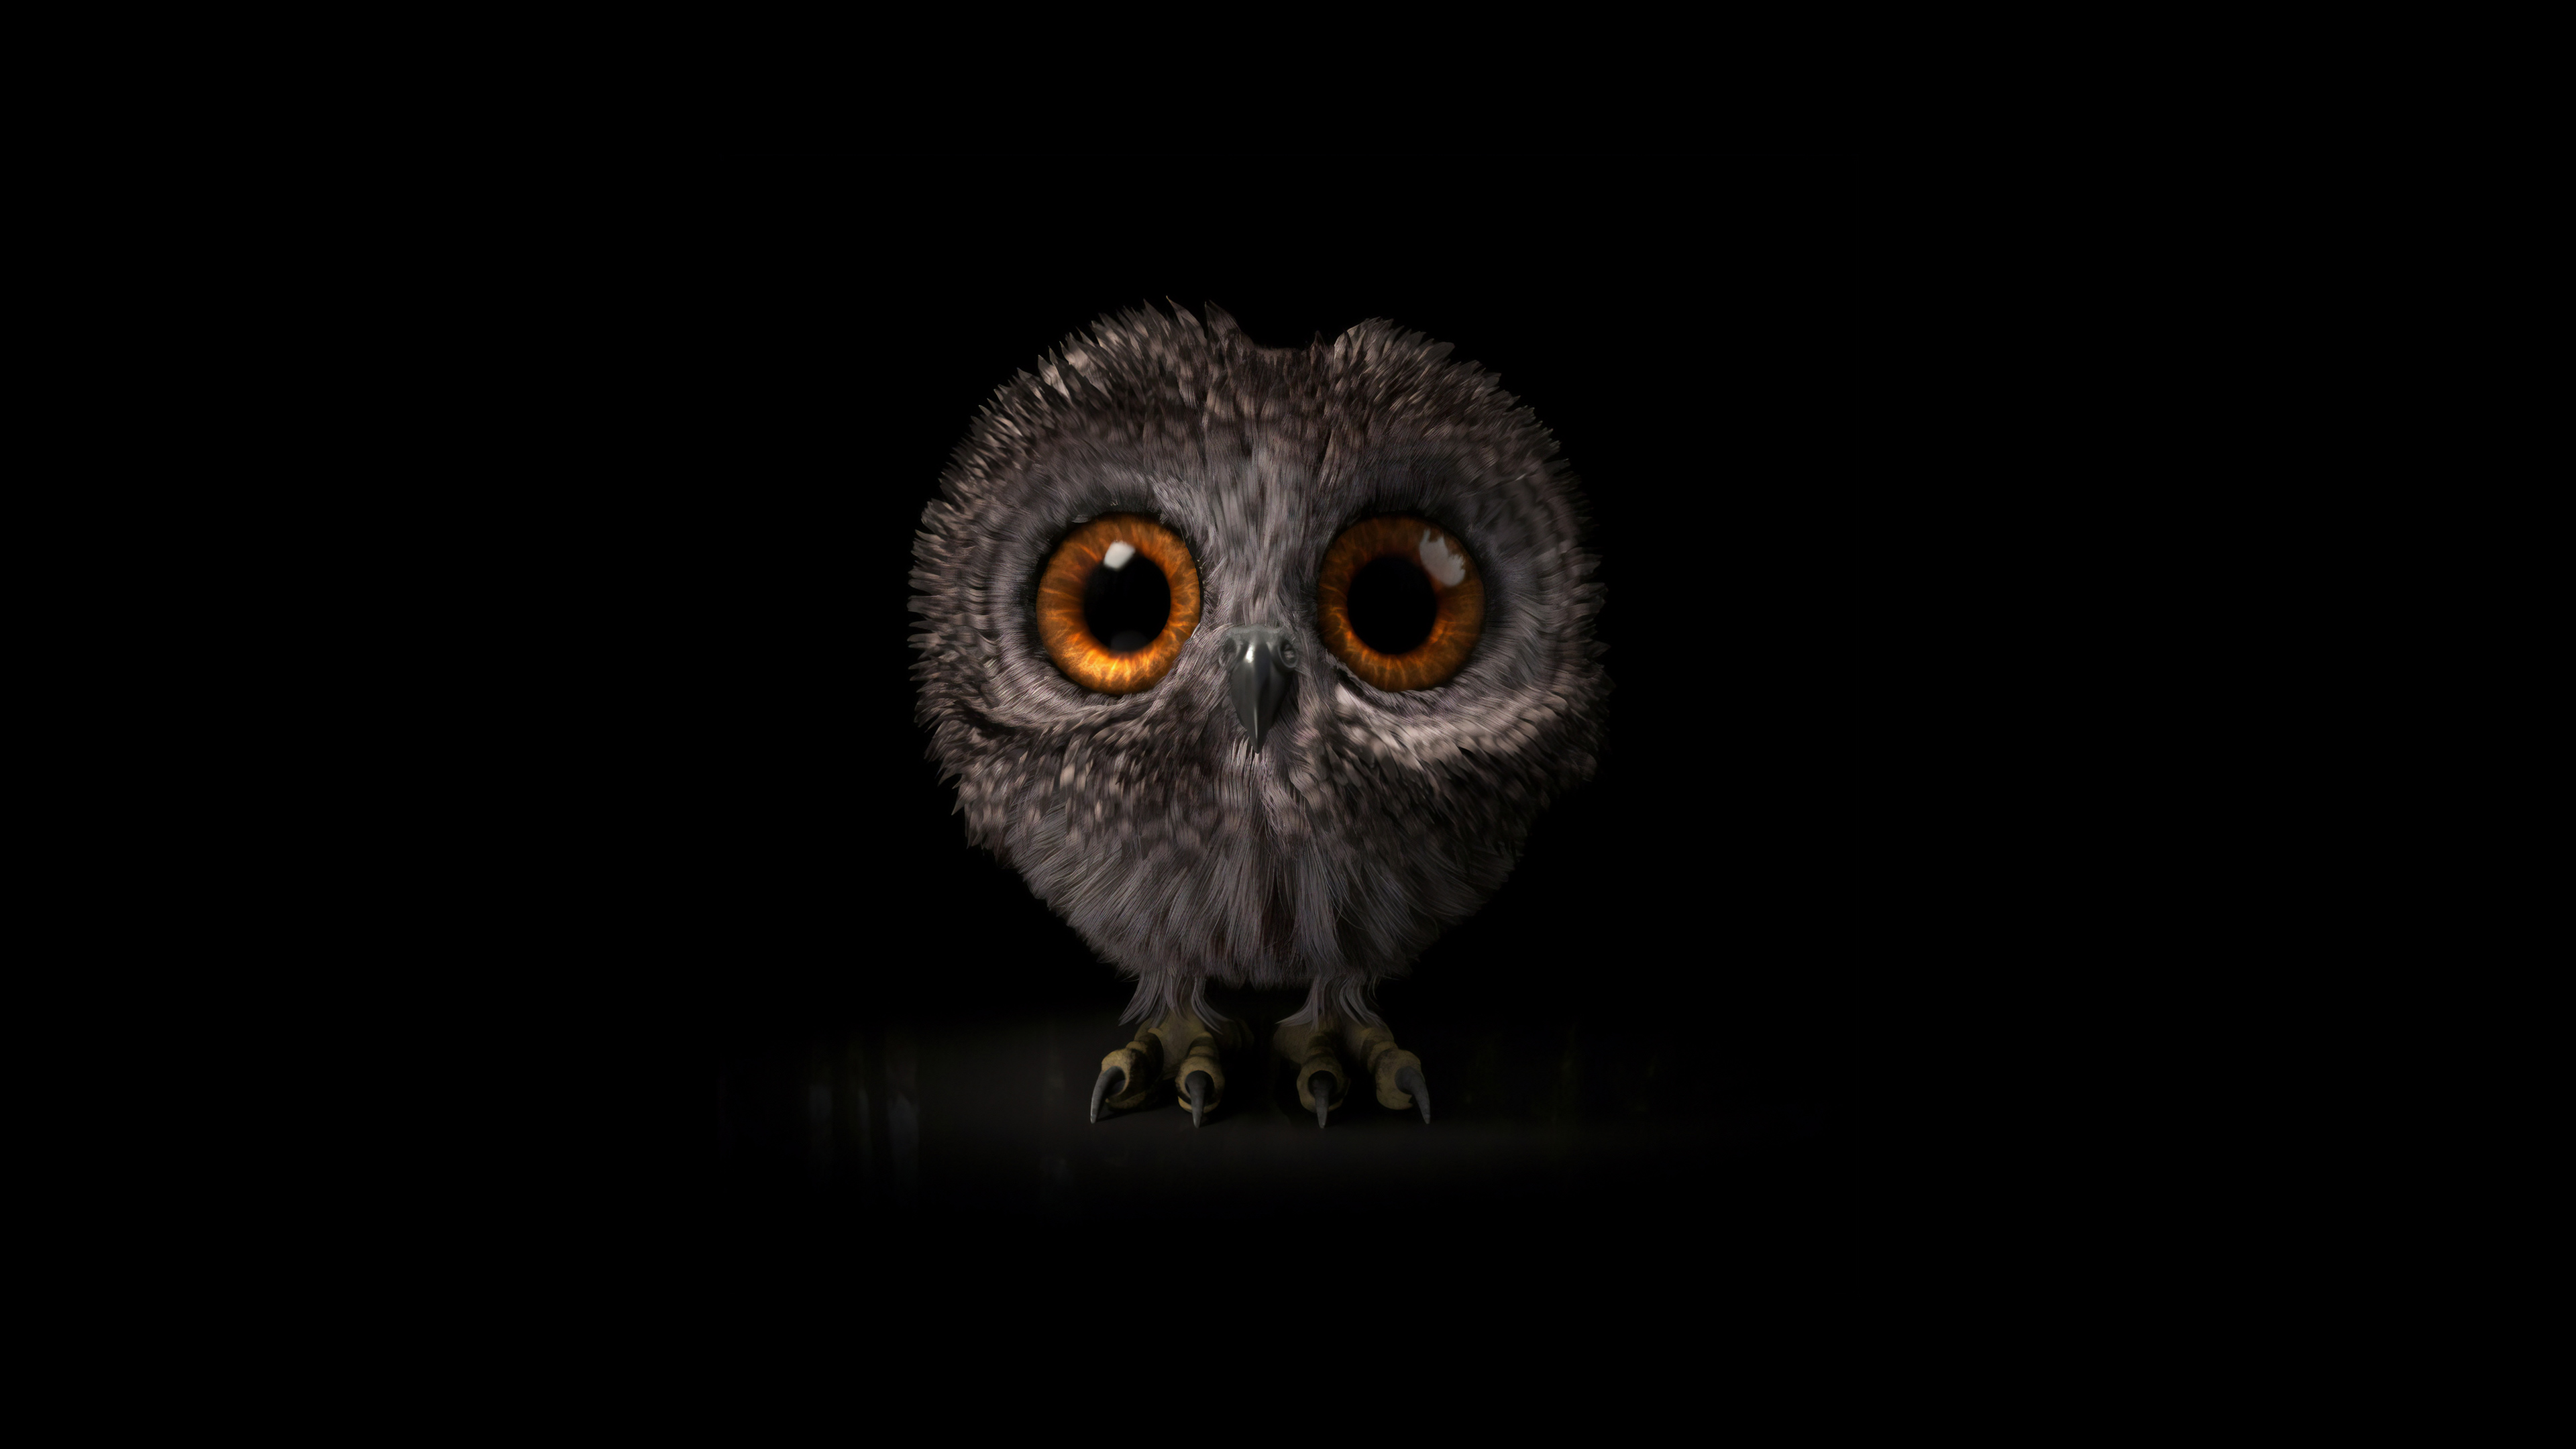 Cute owl on a dark background